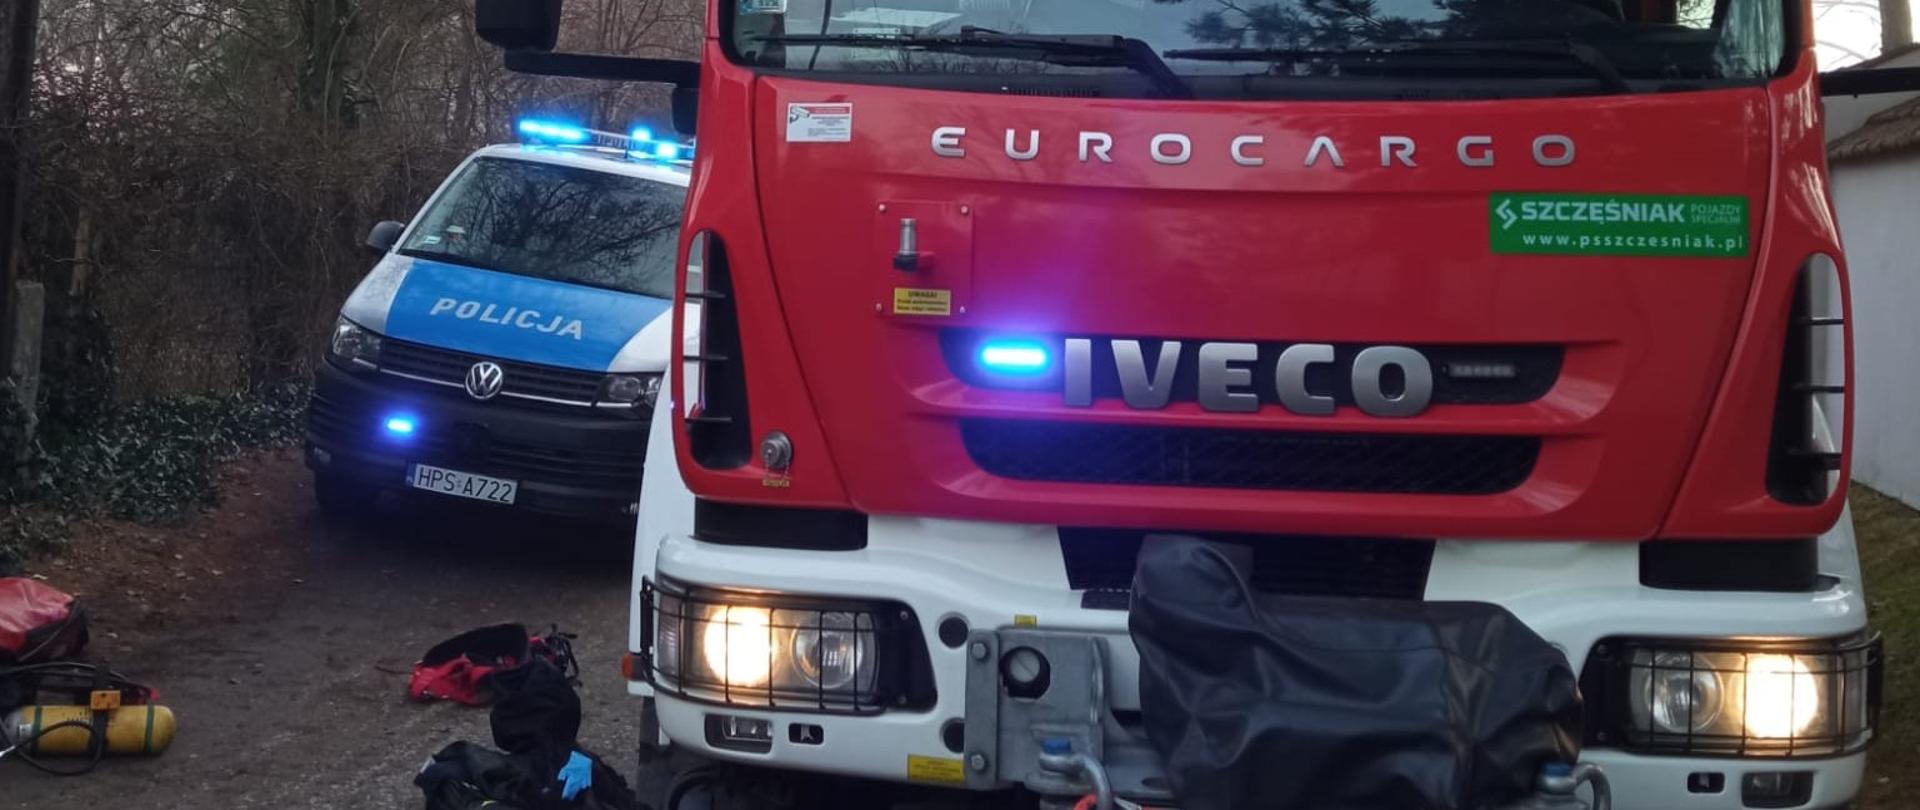 Zdjęcie przedstawia przód samochodu pożarniczego, a po lewej stronie fragment radiowozu policyjnego. Na drodze leżą elementy umundurowania ratownika, który ratował psa.